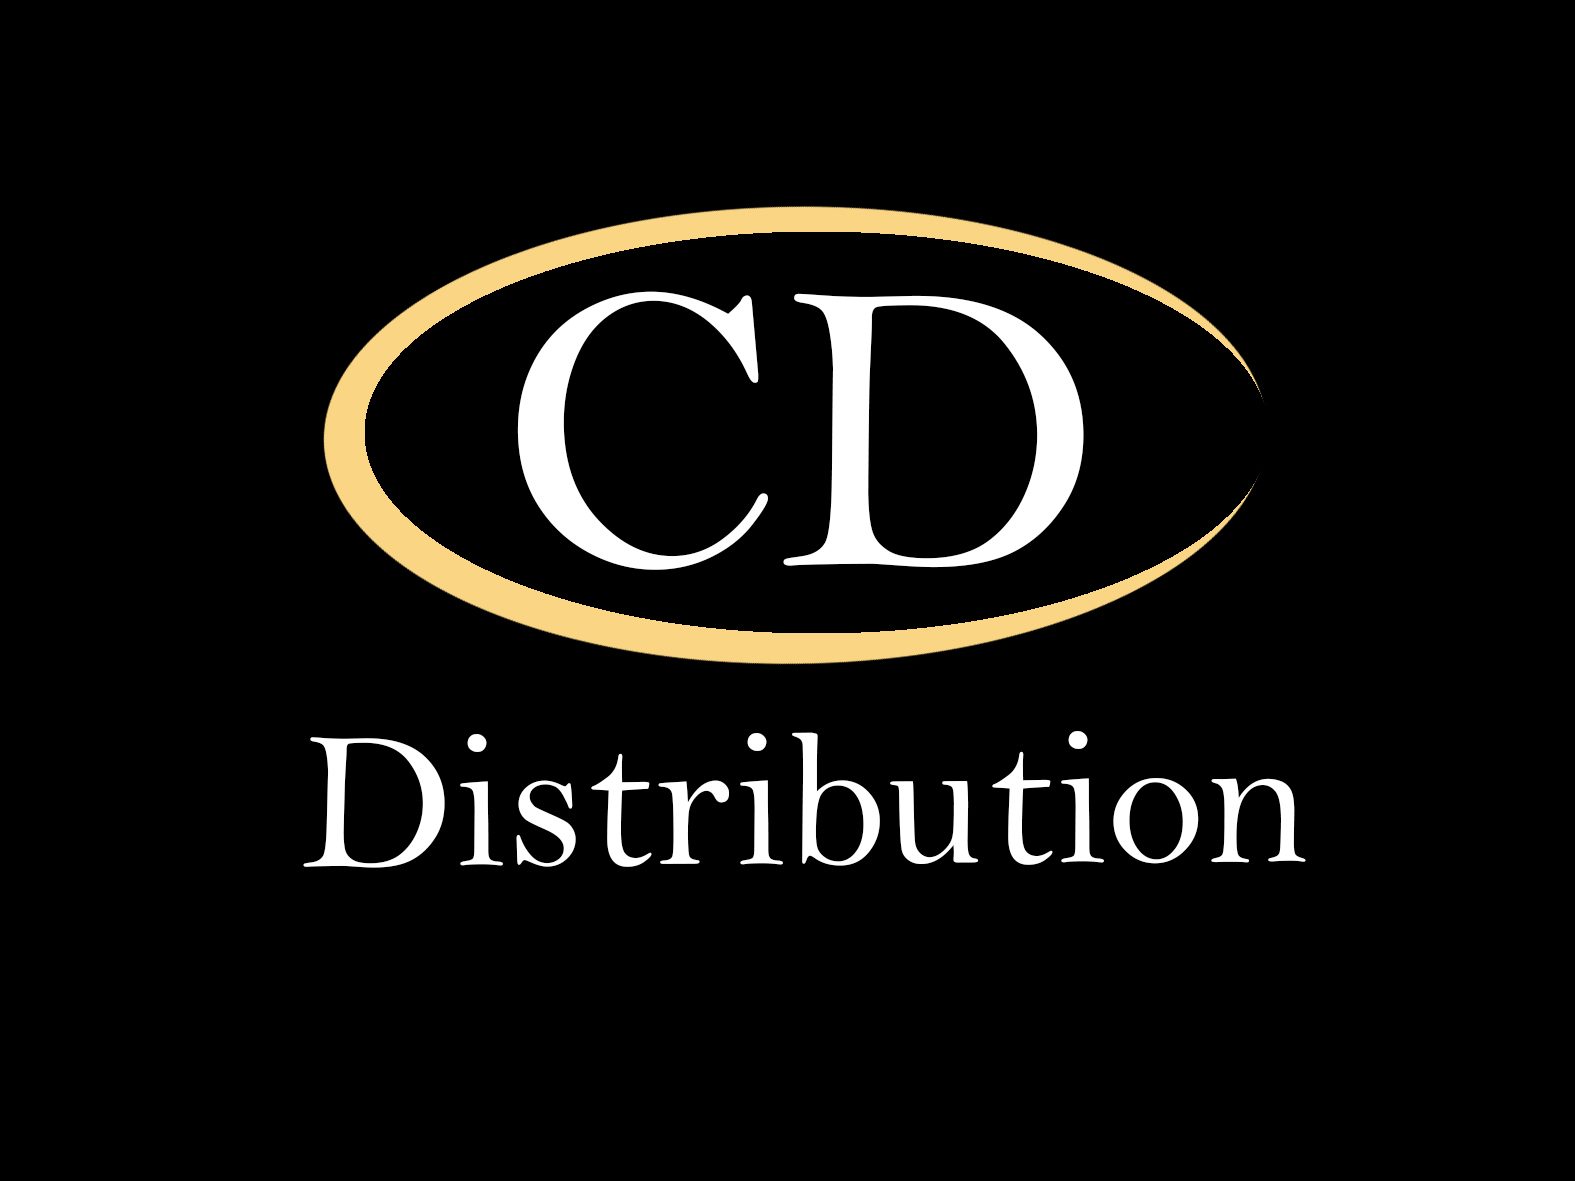 CD Distribution